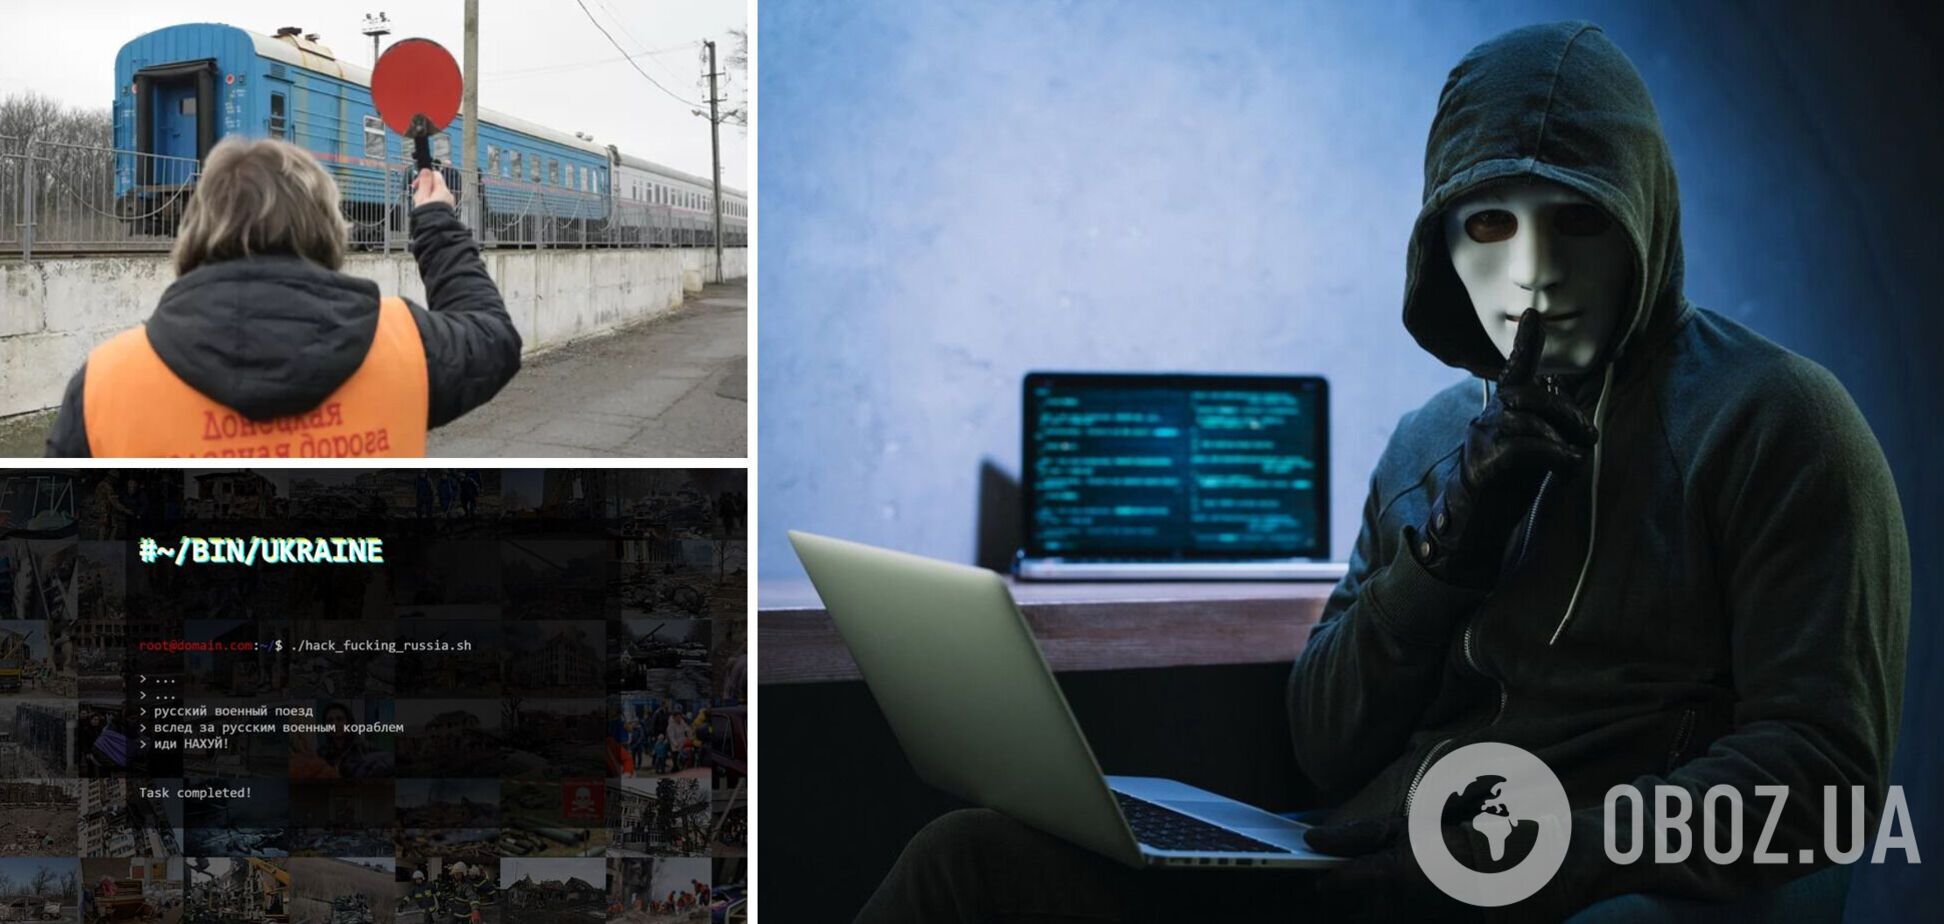 Украинские хакеры взломали сайт железной дороги 'ДНР' и оставили послание для русского военного поезда. Фото